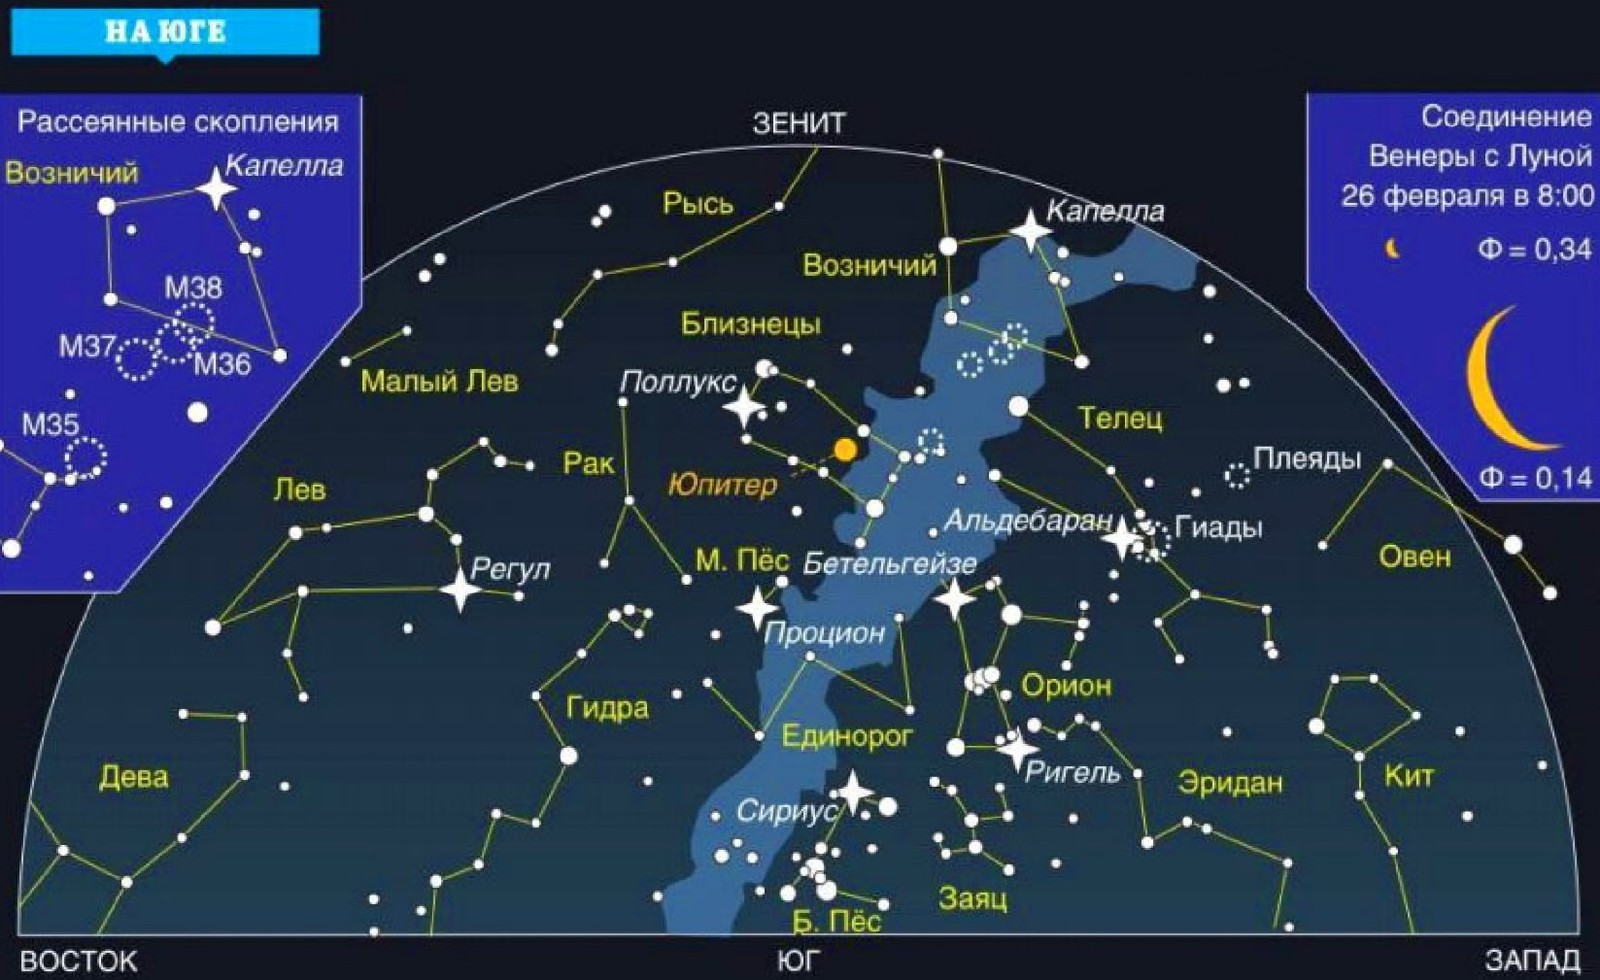 Звезды и их названия. Карта звездного неба с названиями звезд. Созвездия летнего неба Северного полушария. Созвездия Северного полушария летом. Созвездия зимнего неба Северного полушария.